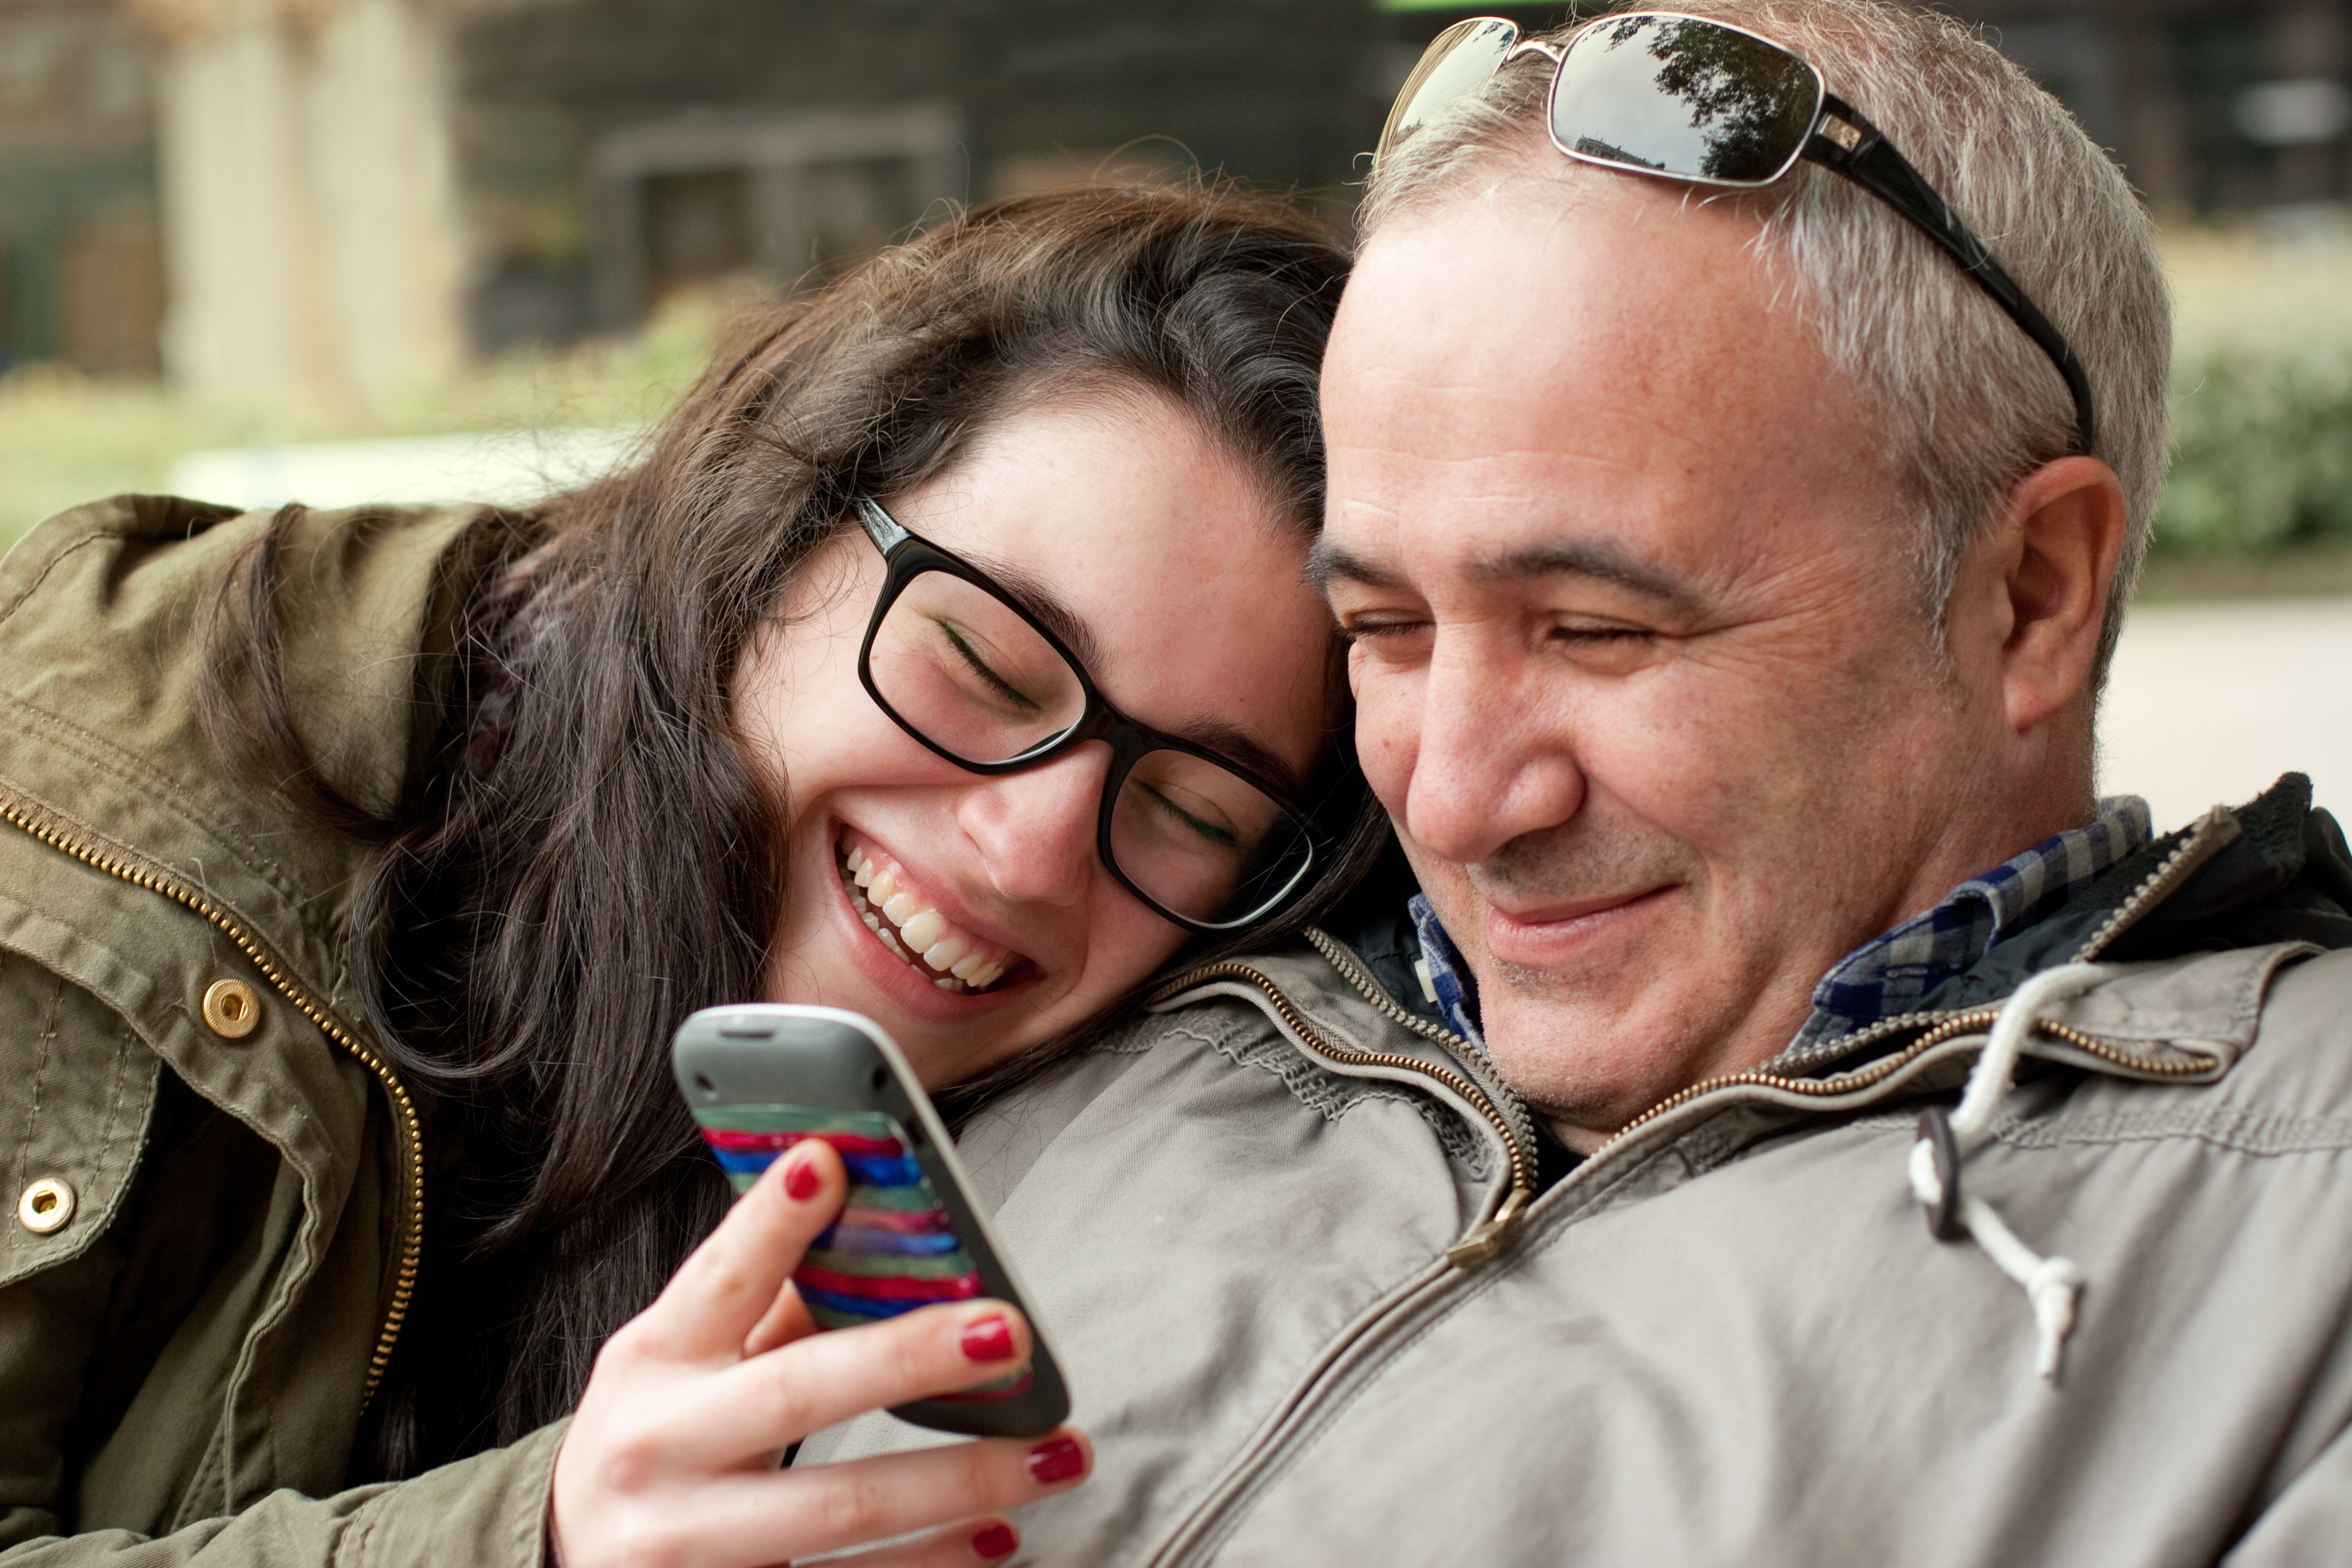 Une femme riant en montrant son téléphone portable à un homme | Source : Shutterstock